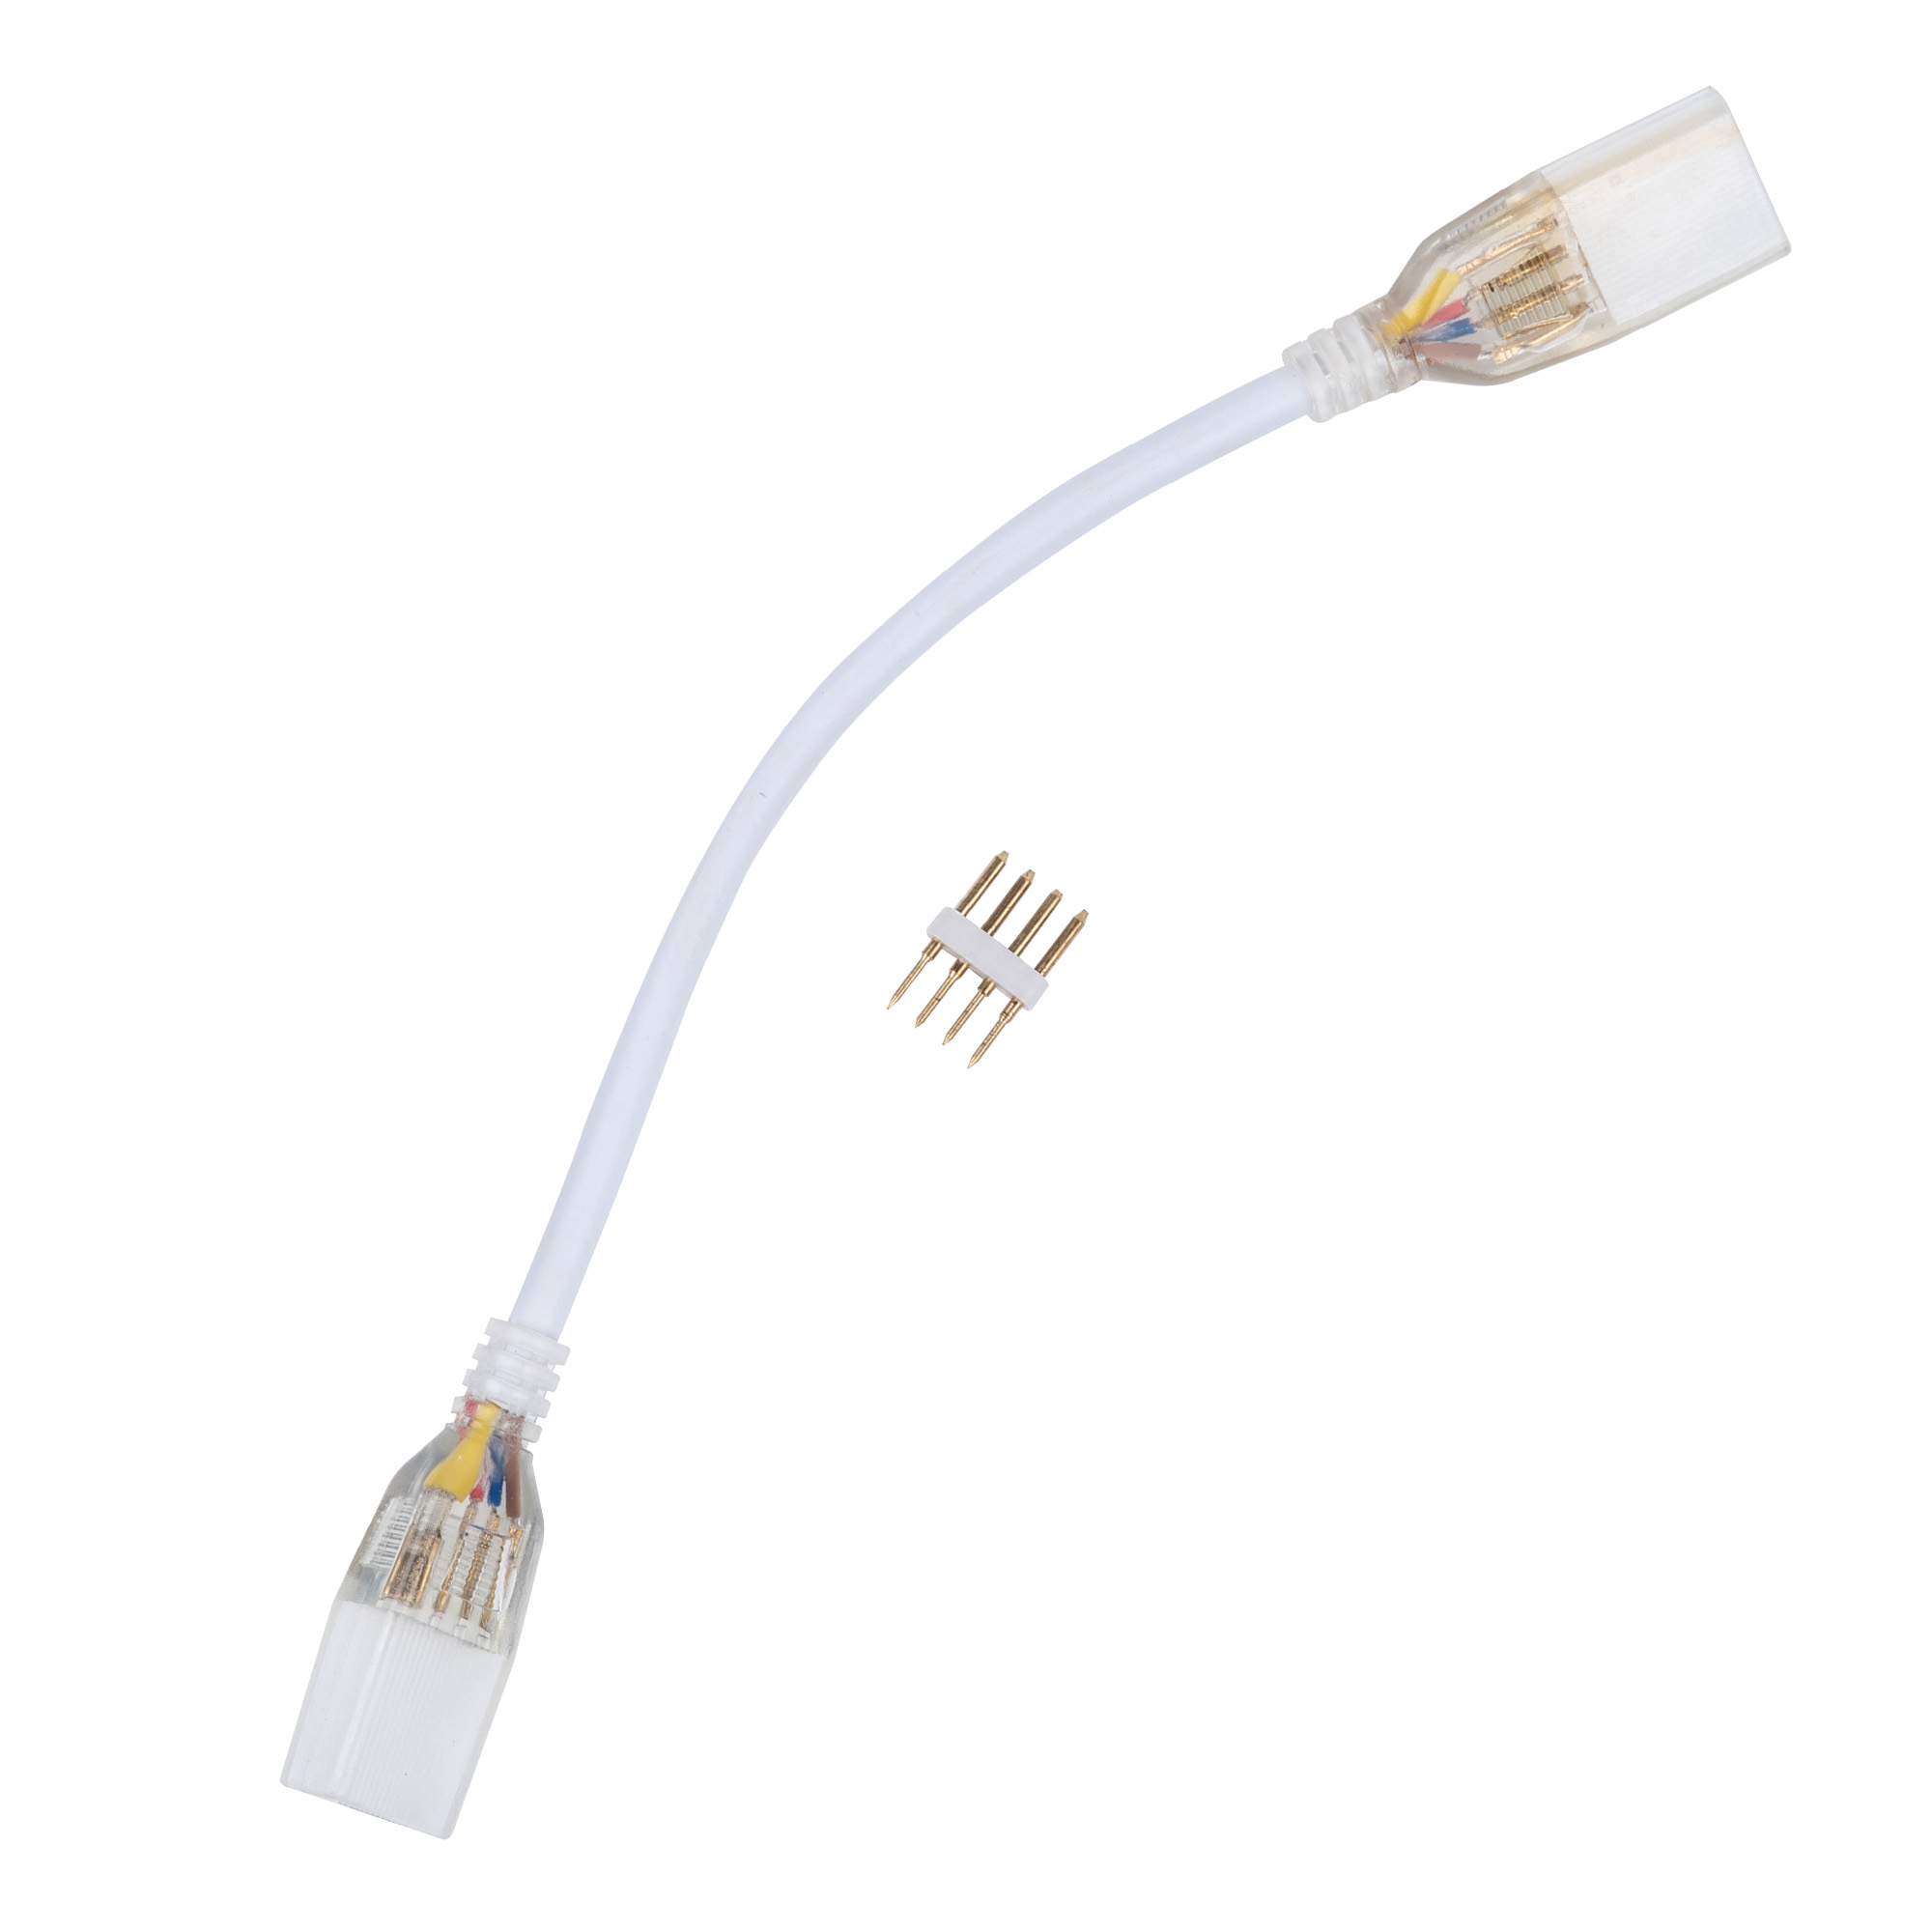 UCX-SK4-B67-RGB CLEAR 005 POLYBAG Соединитель провод для светодиодных лент 220В 5050. 4 контакта. цвет прозрачный. 5 штук в пакете